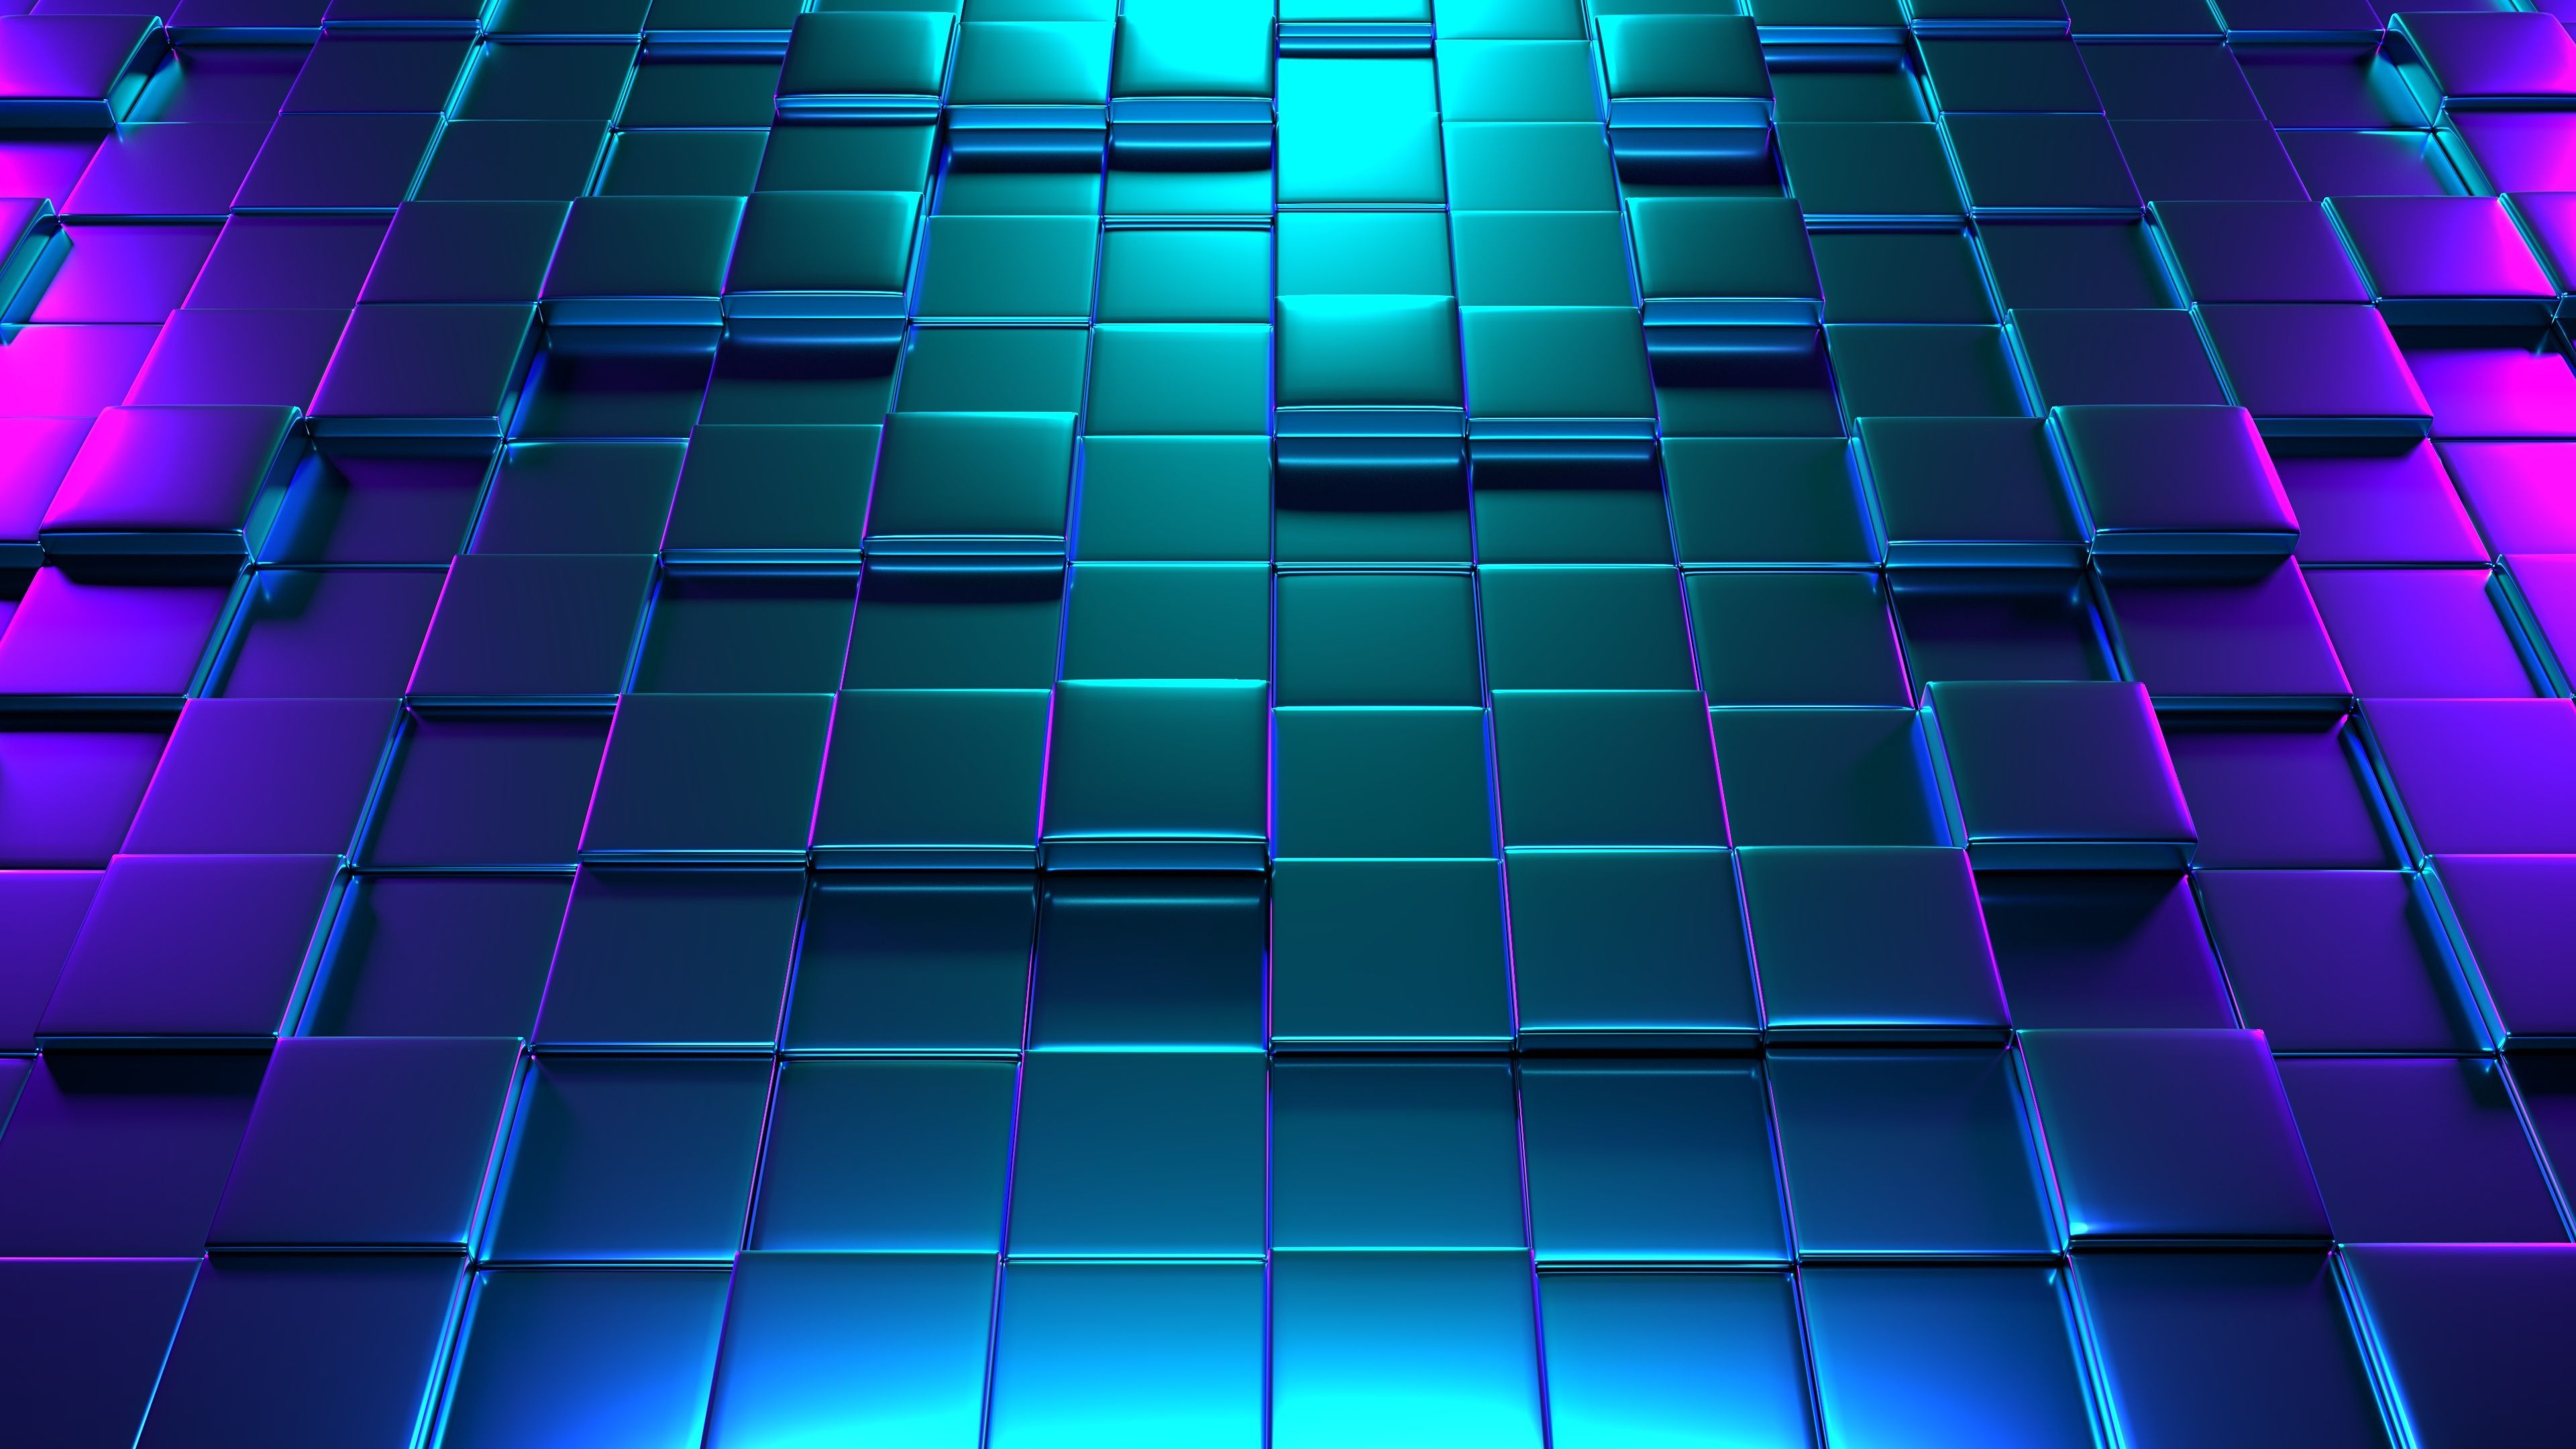 Neon 3D Cubes 4K. Wallpaper iphone neon, Neon wallpaper, Data structures